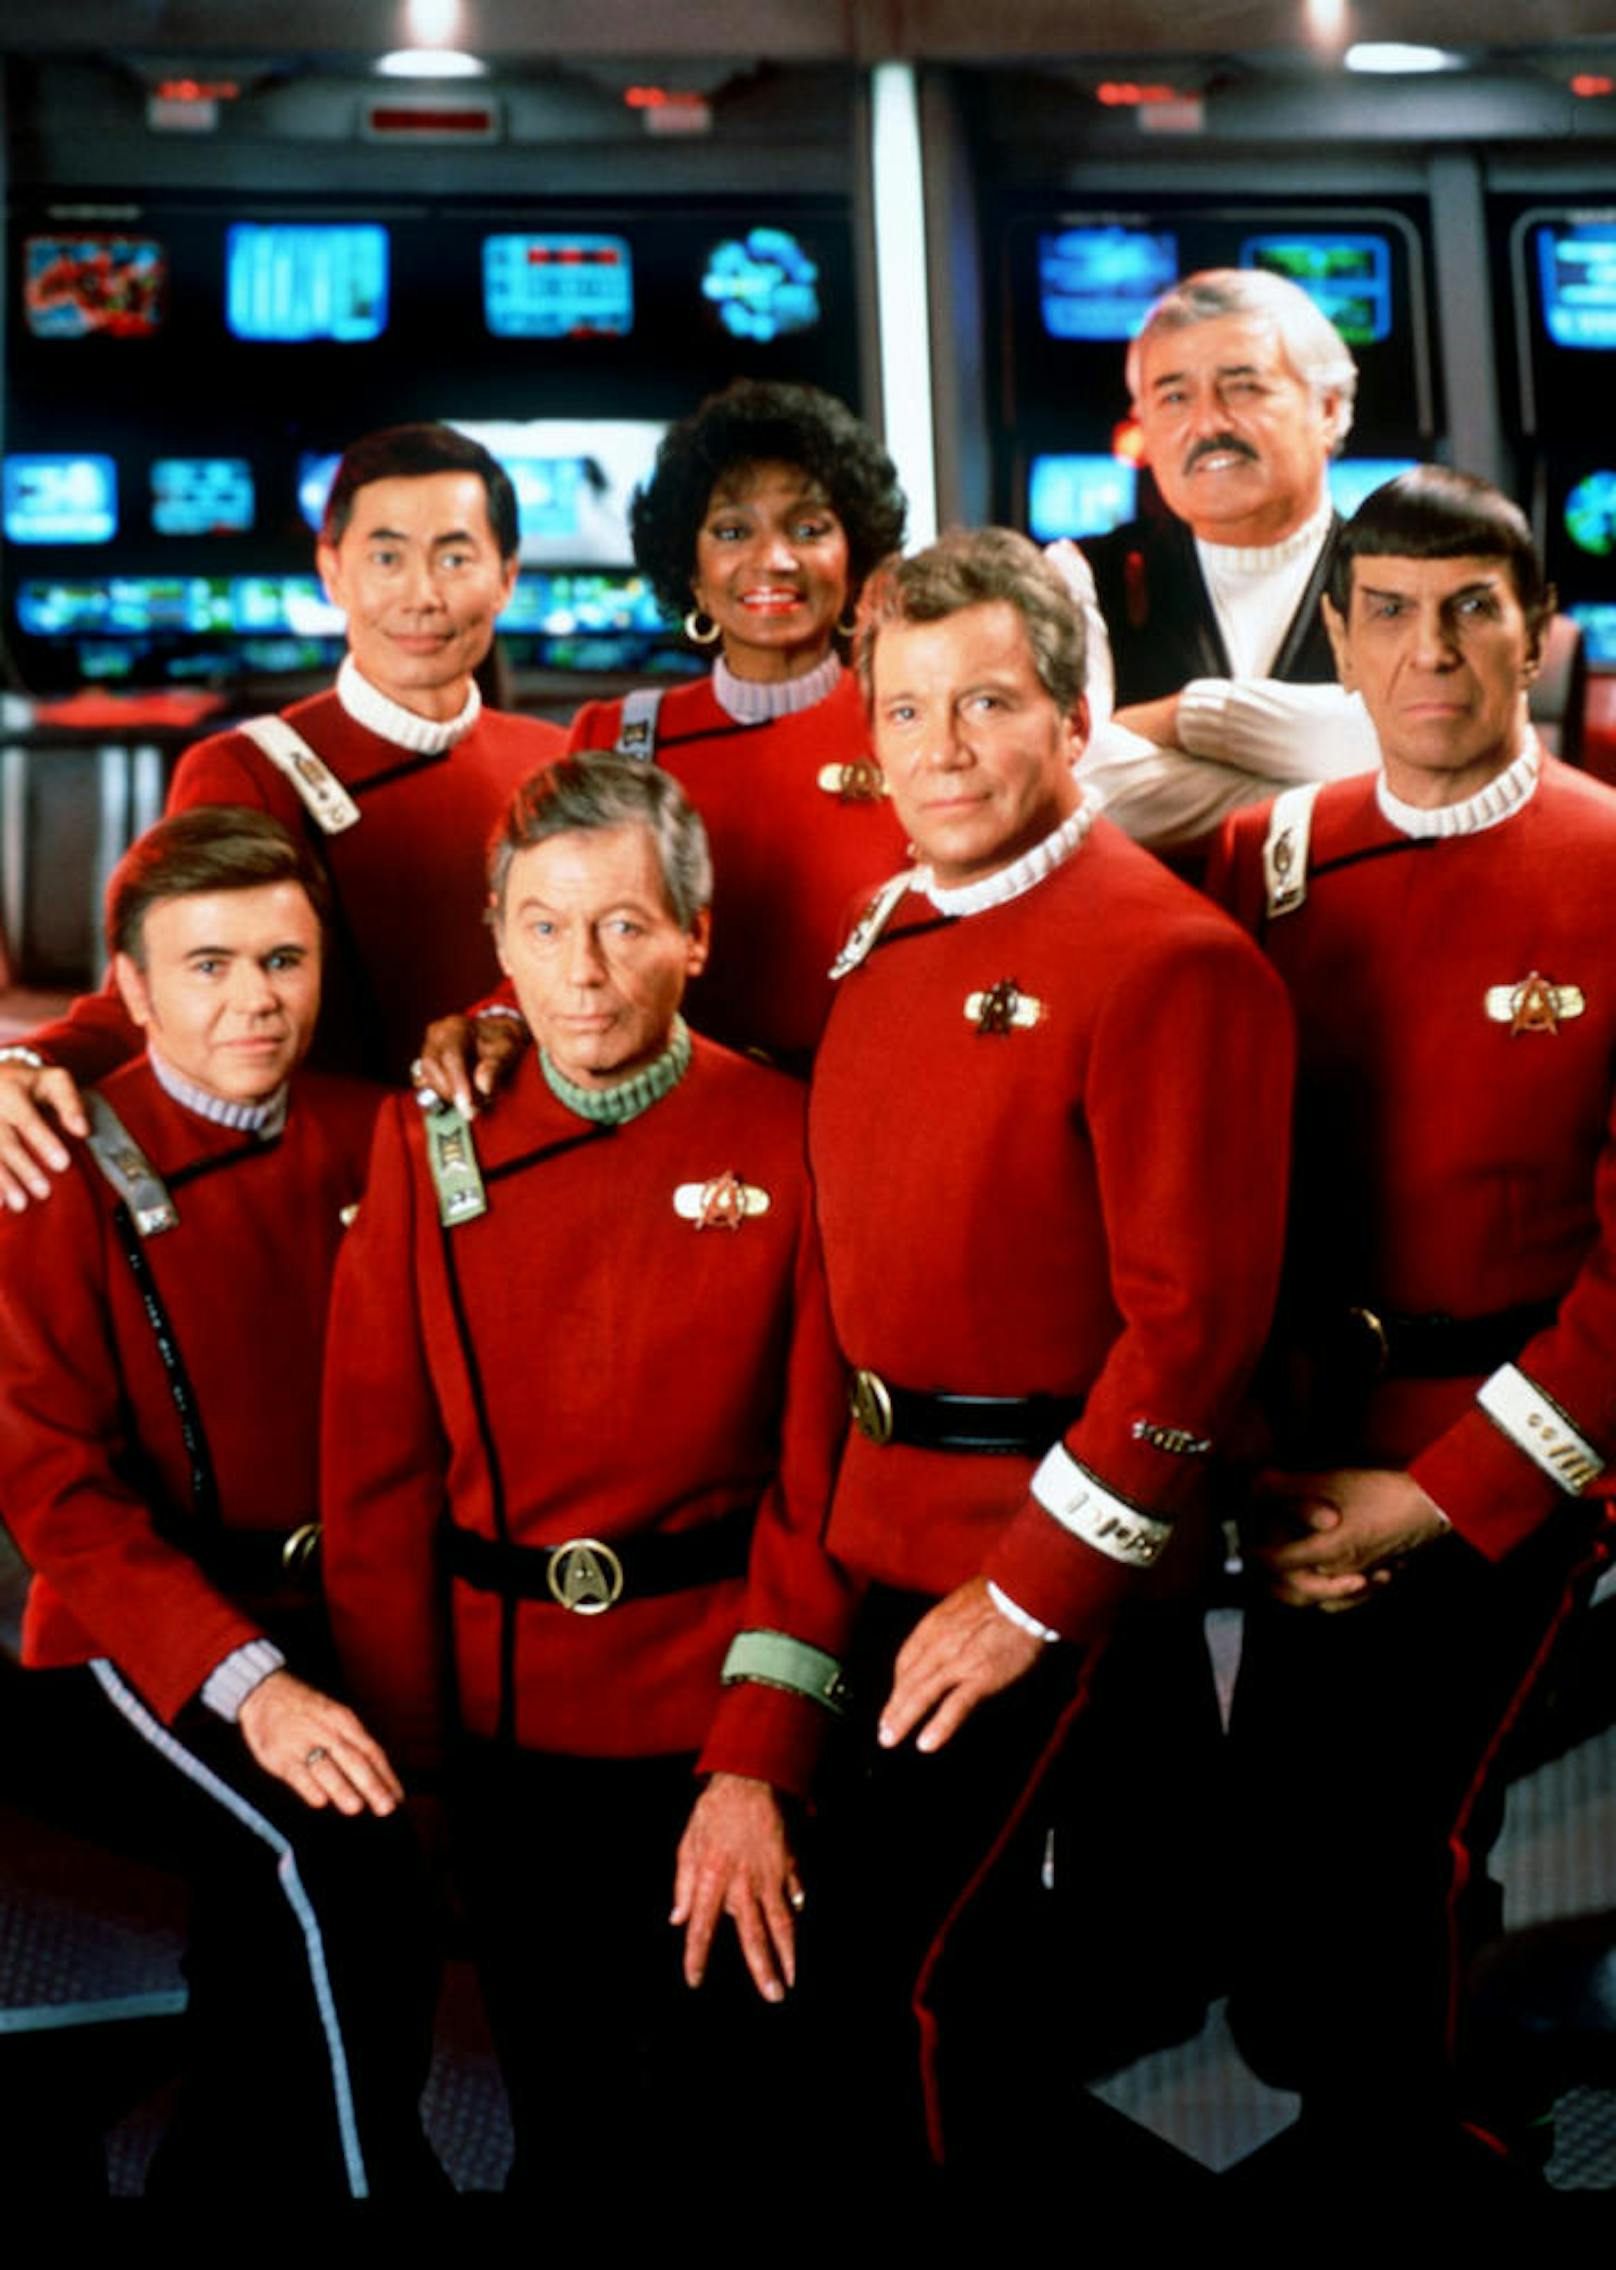 Die Crew des Raumschiff Enterprise Walter Koenig (l-r), George Takei, Deforest Kelley, Nichelle Nichols, William Shatner, James Doohan und Leonard Nimoy in einer Szene des Films "Star Trek VI", Enterprise (Archivfoto aus dem Jahr 1992)